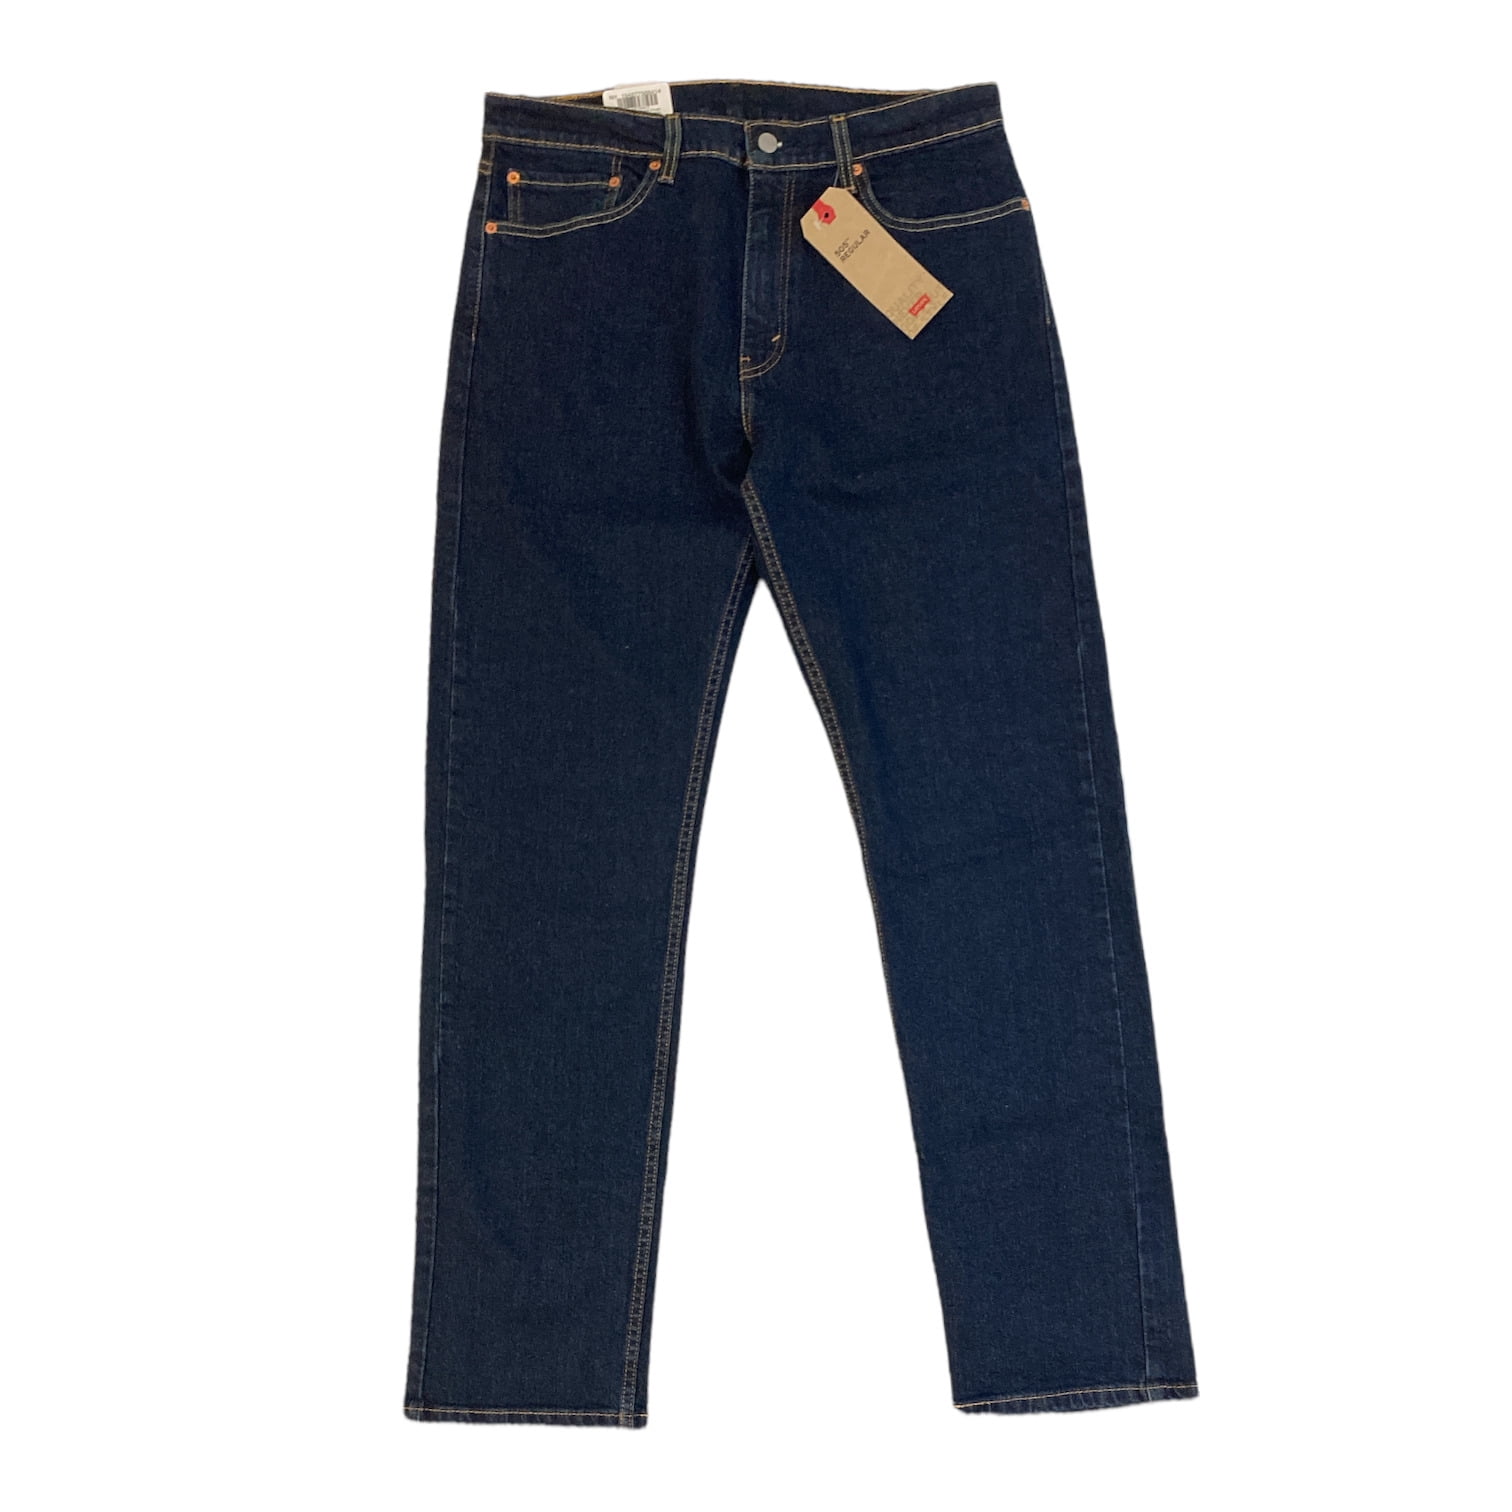 Levi's Men's 505 Regular Fit Jeans in Medium Stonewash, 33 x 30